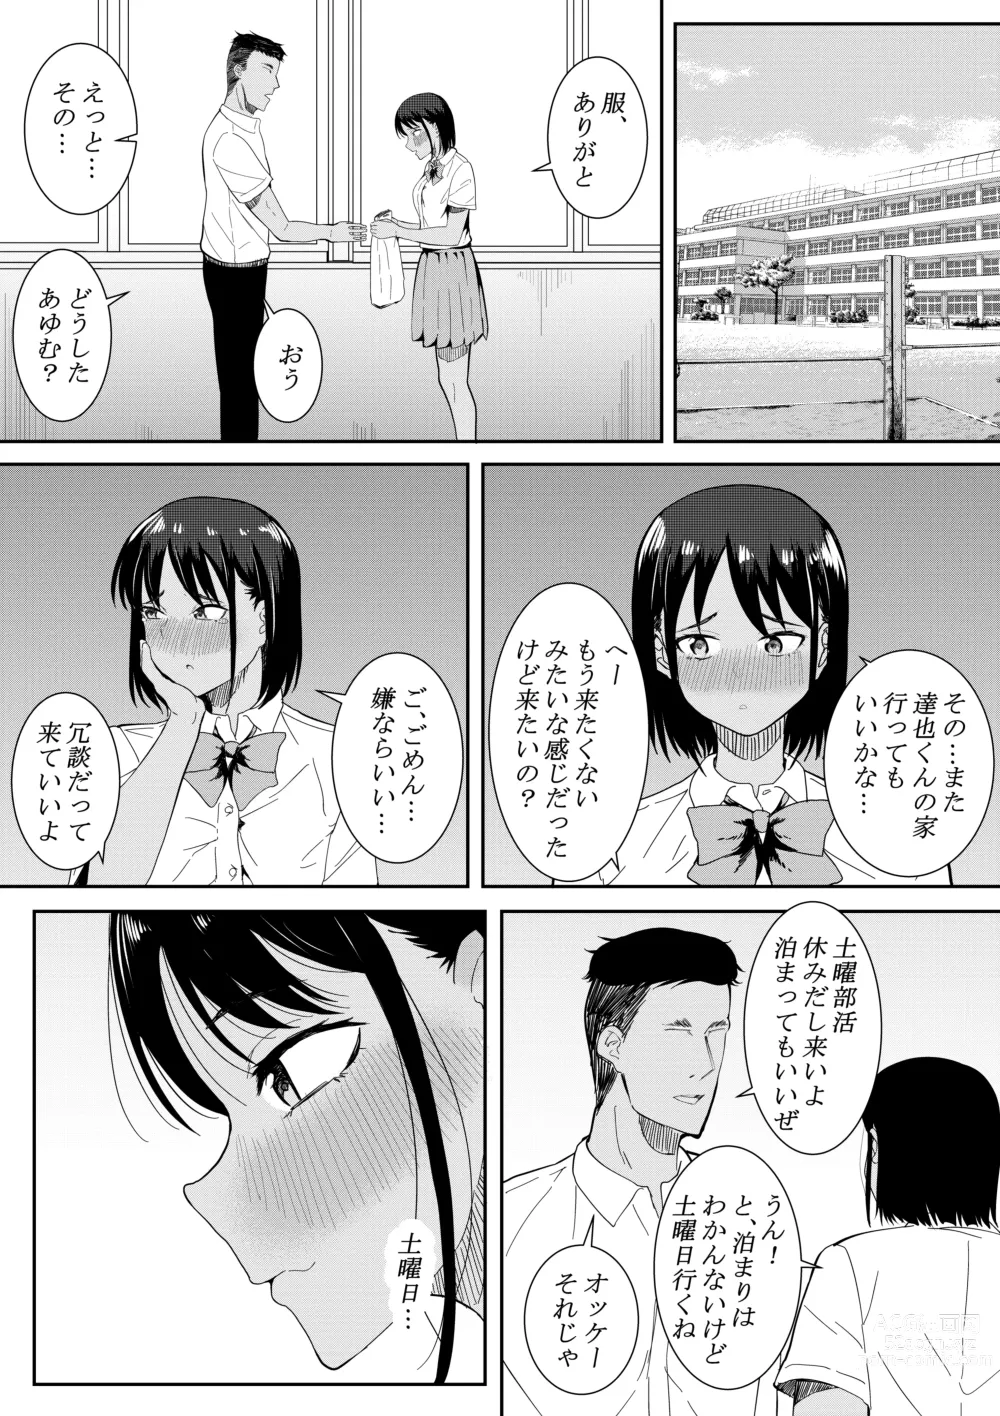 Page 62 of doujinshi Nigatena Aitsu ni Benkyou wo Oshieru Koto ni Natte…